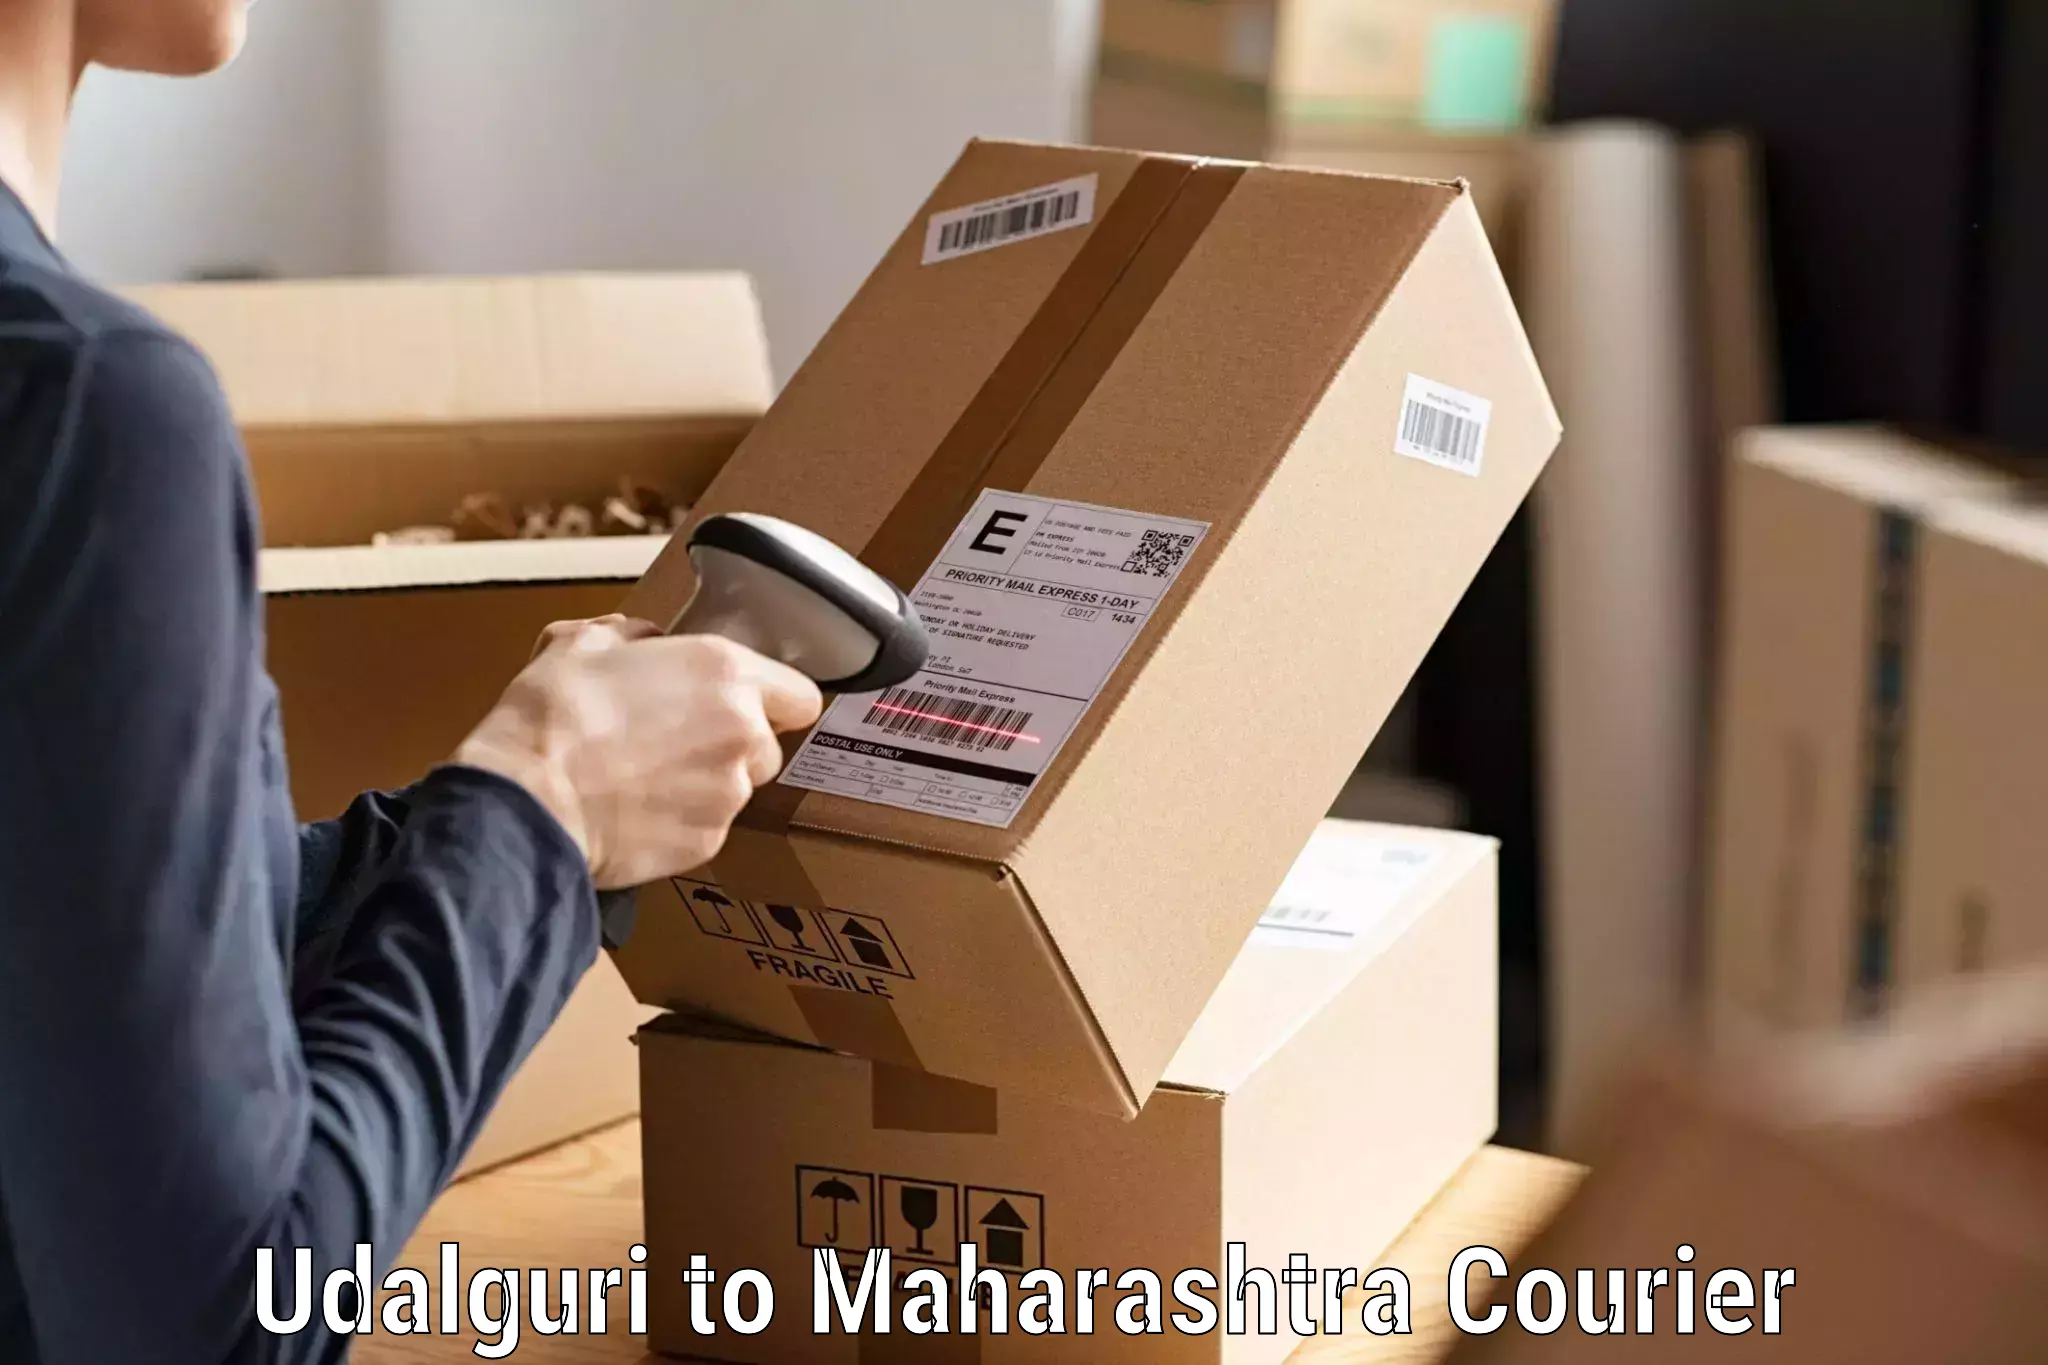 Quality courier services Udalguri to Jawaharlal Nehru Port Nhava Sheva